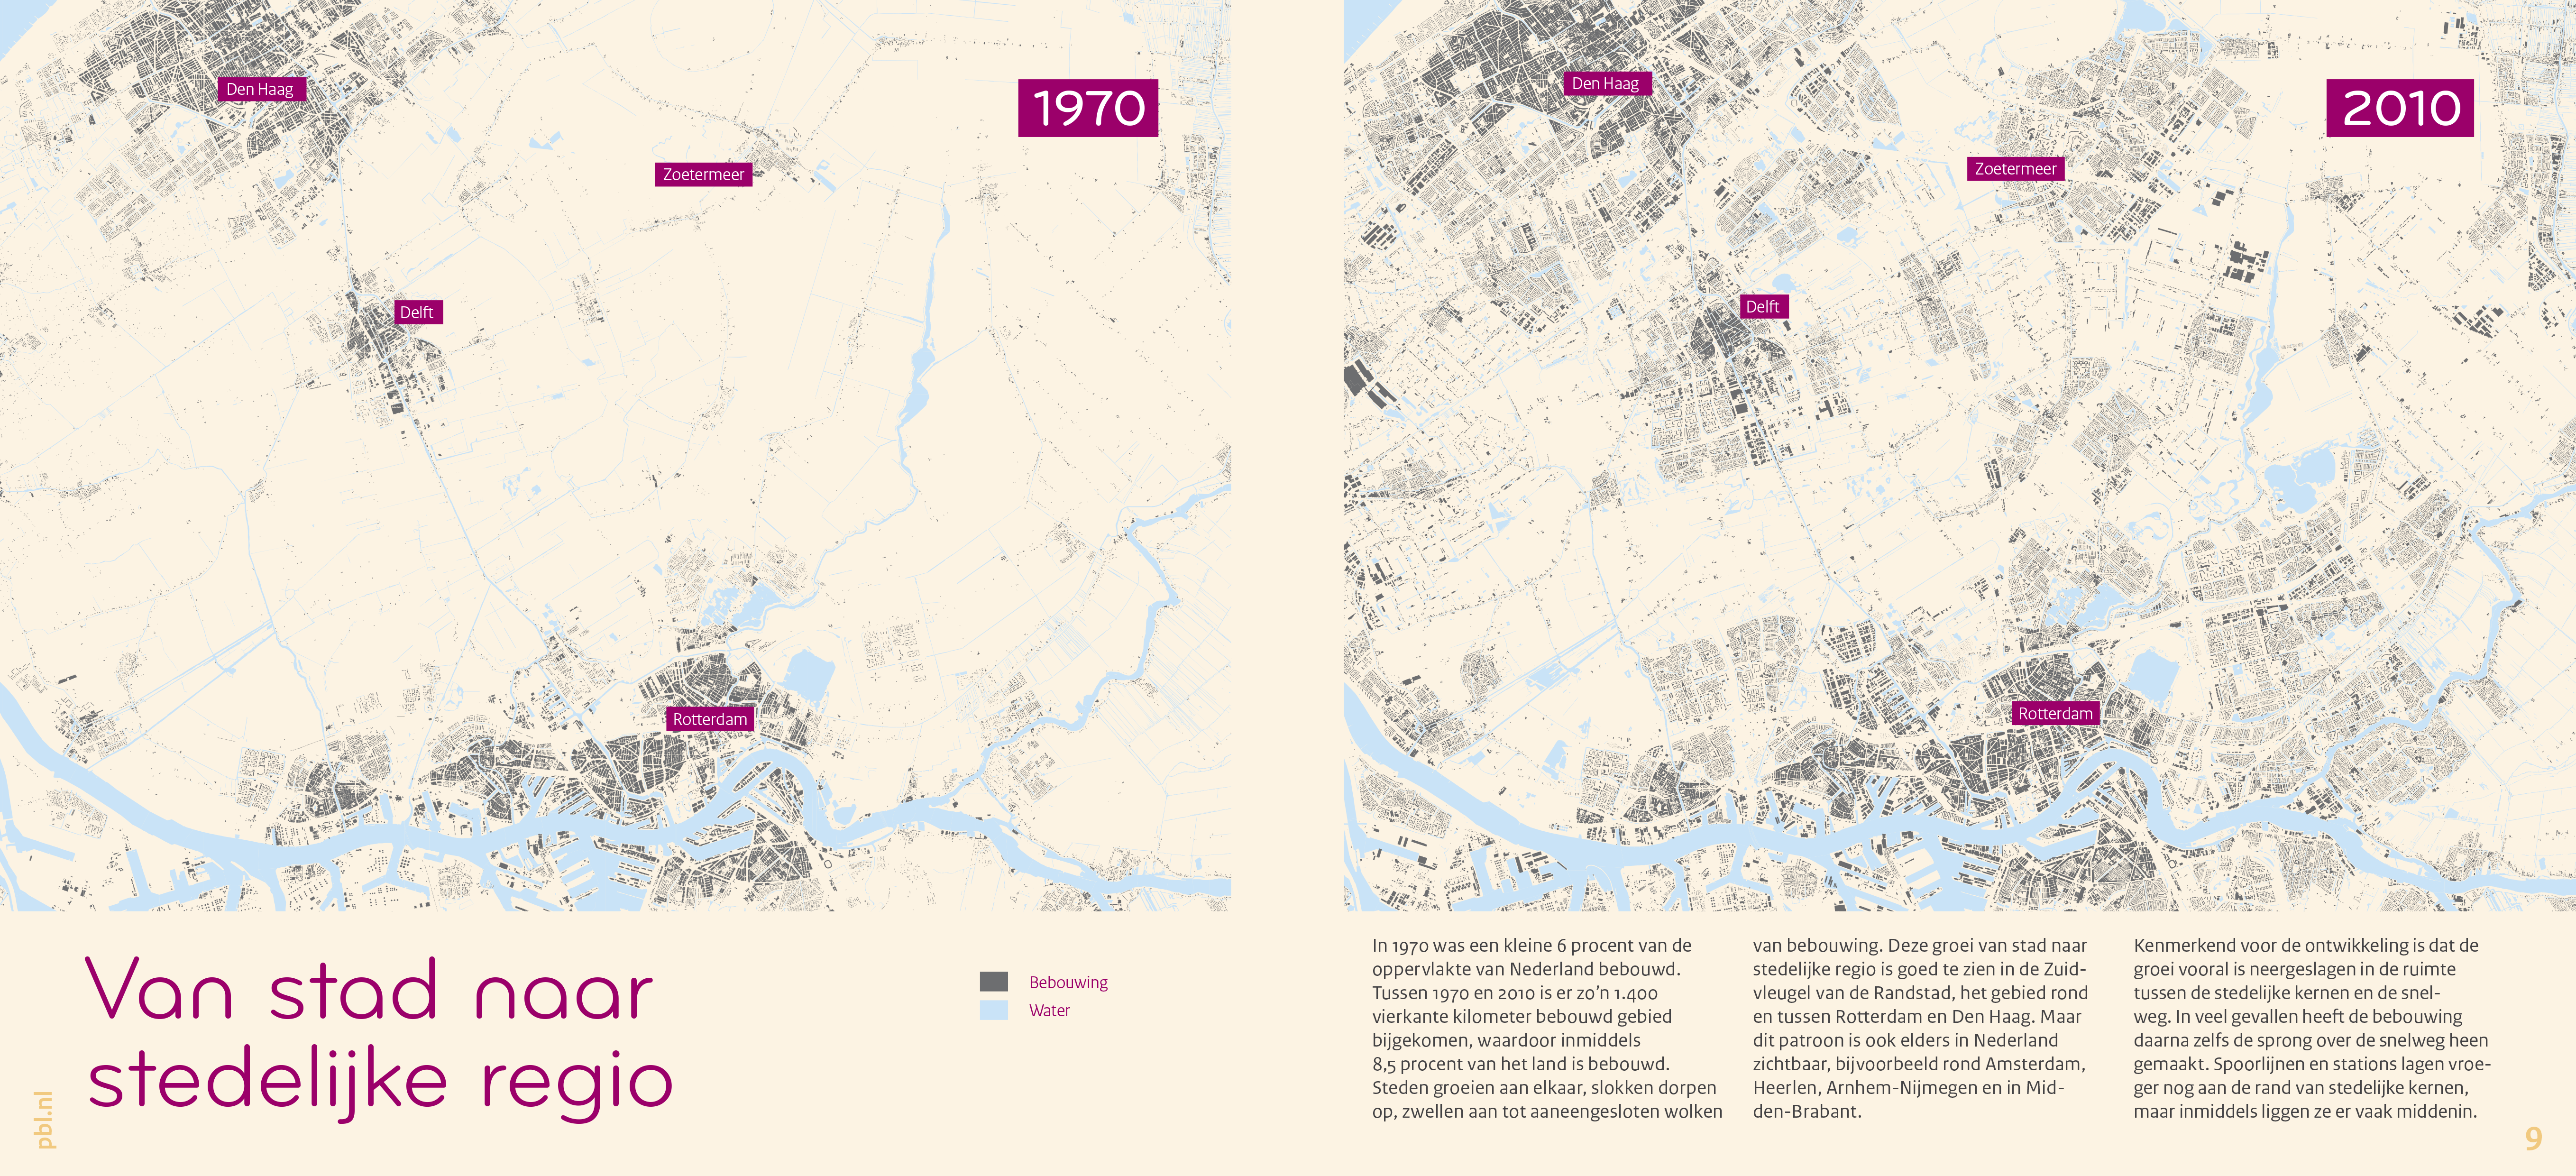 In 1970 was een kleine 6 procent van het oppervlak van Nederland bebouwd. Tot 2010 kwam daar zo’n 1.400 vierkante kilometer bij.